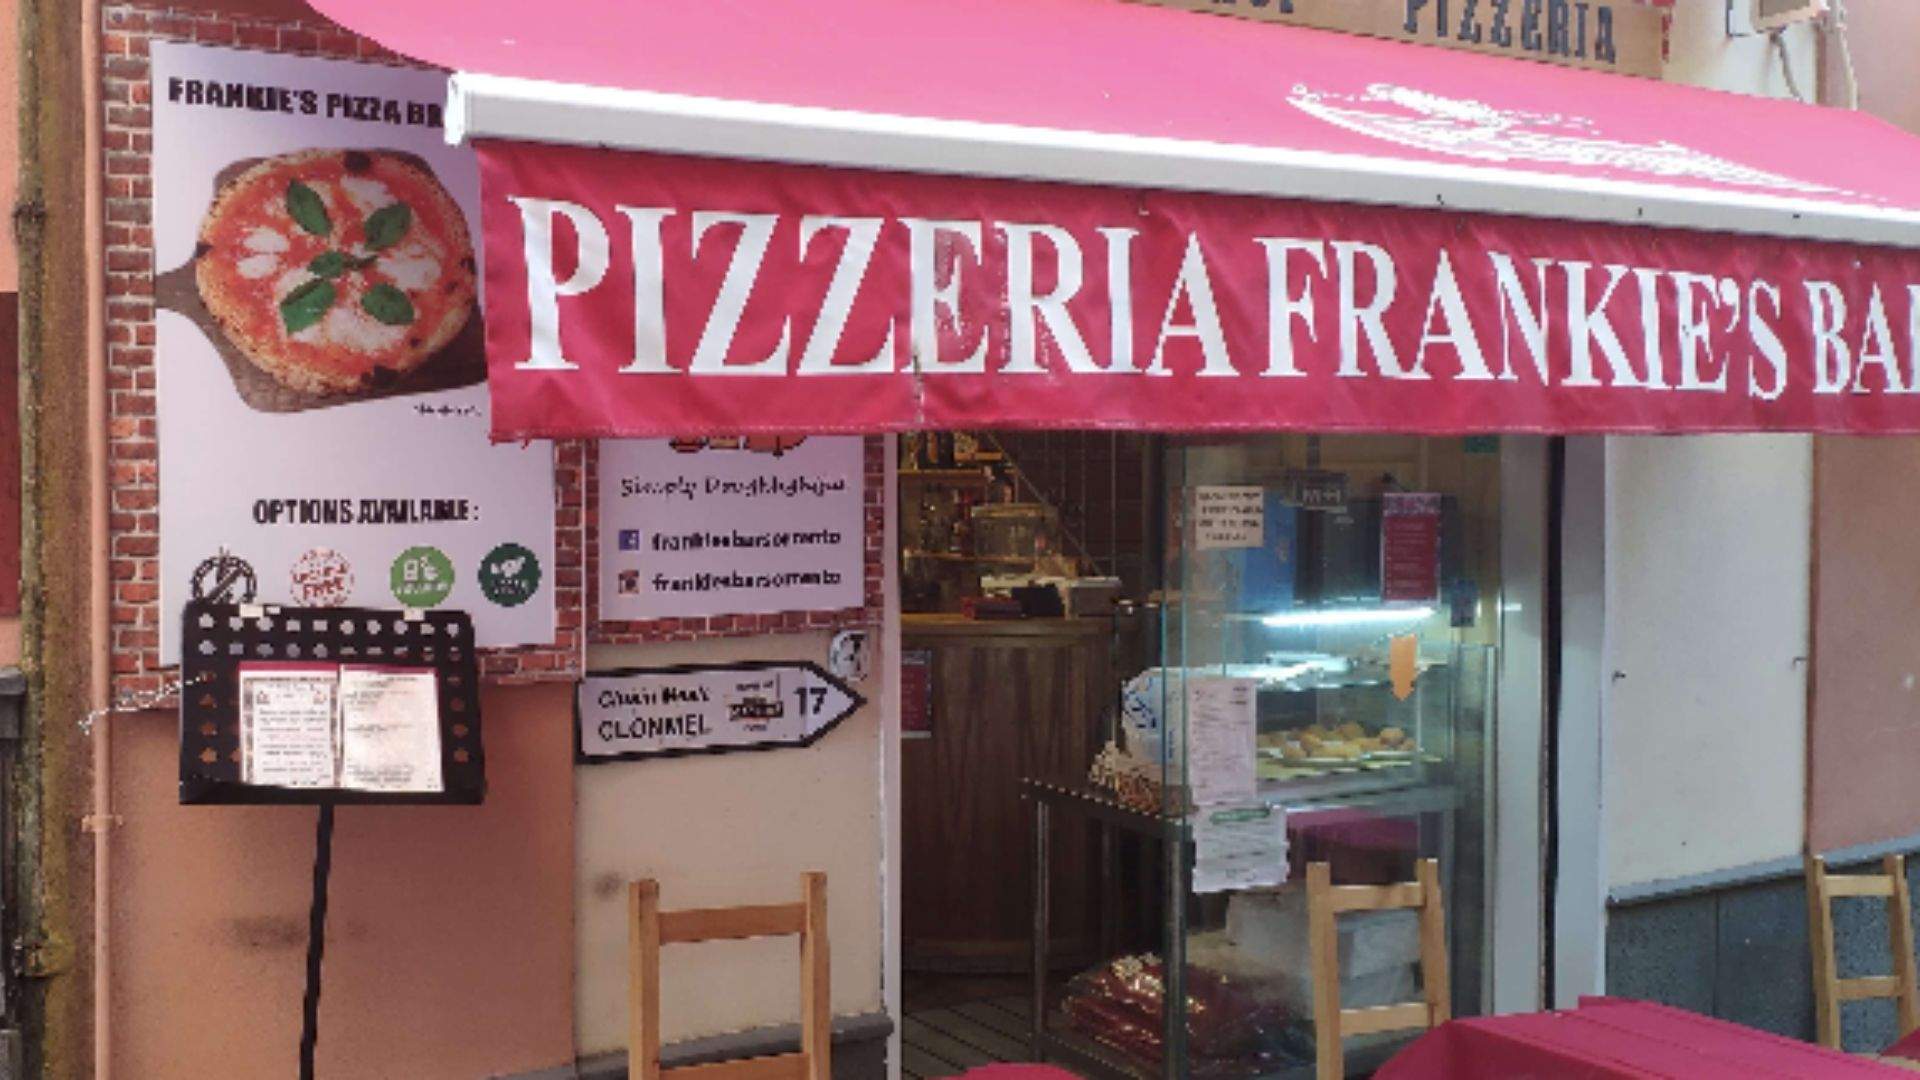 Frankie's Pizza Bar Sorrento